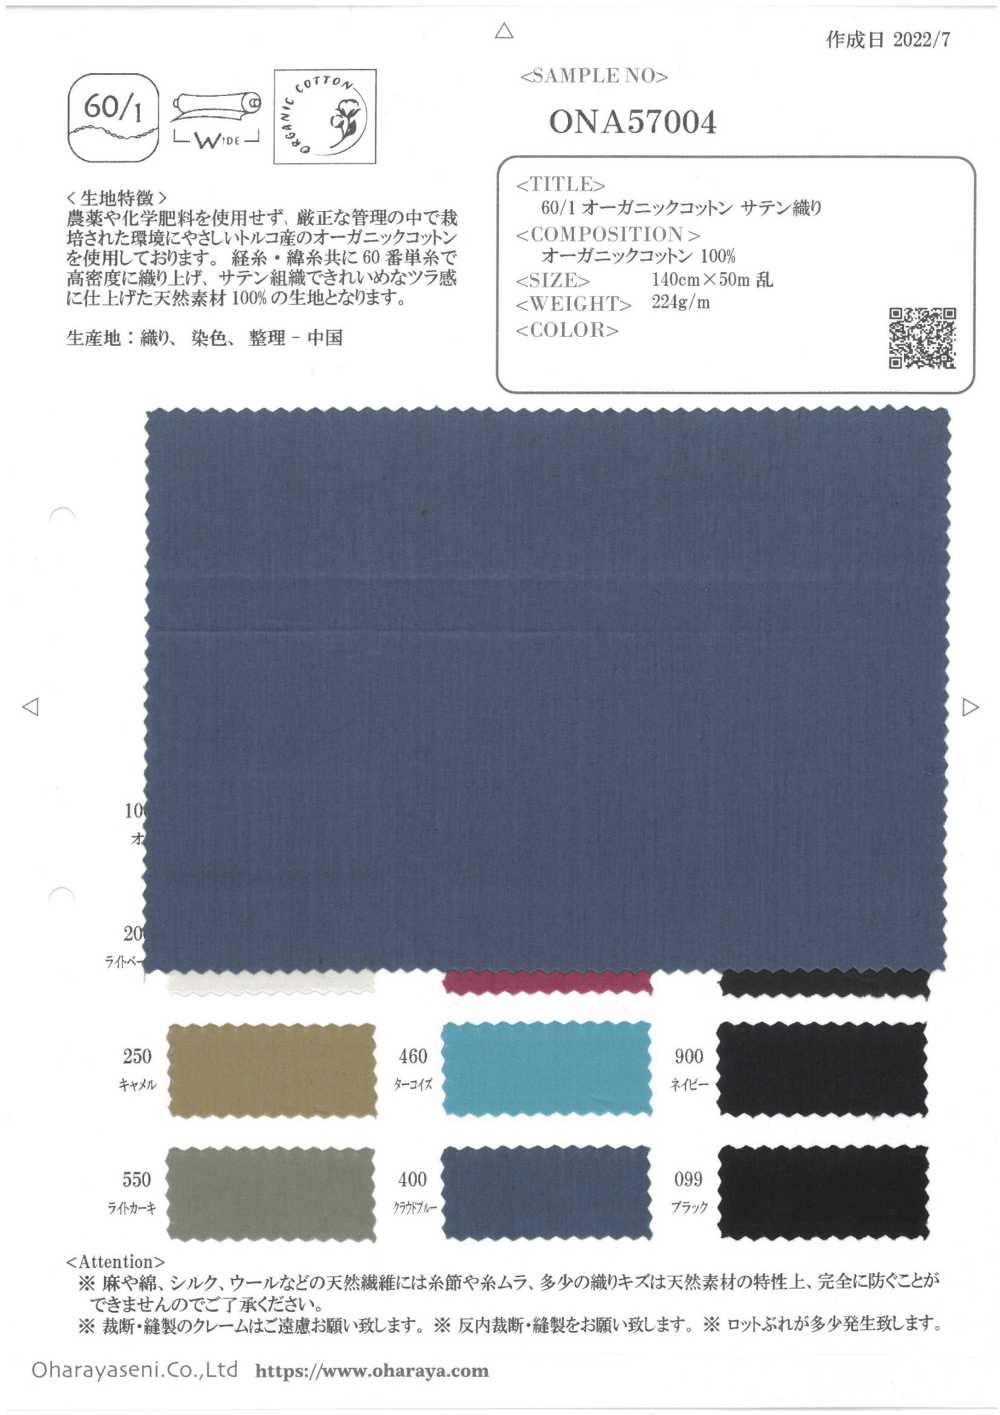 ONA57004 60/1 Organic Cotton Satin[Textile / Fabric] Oharayaseni